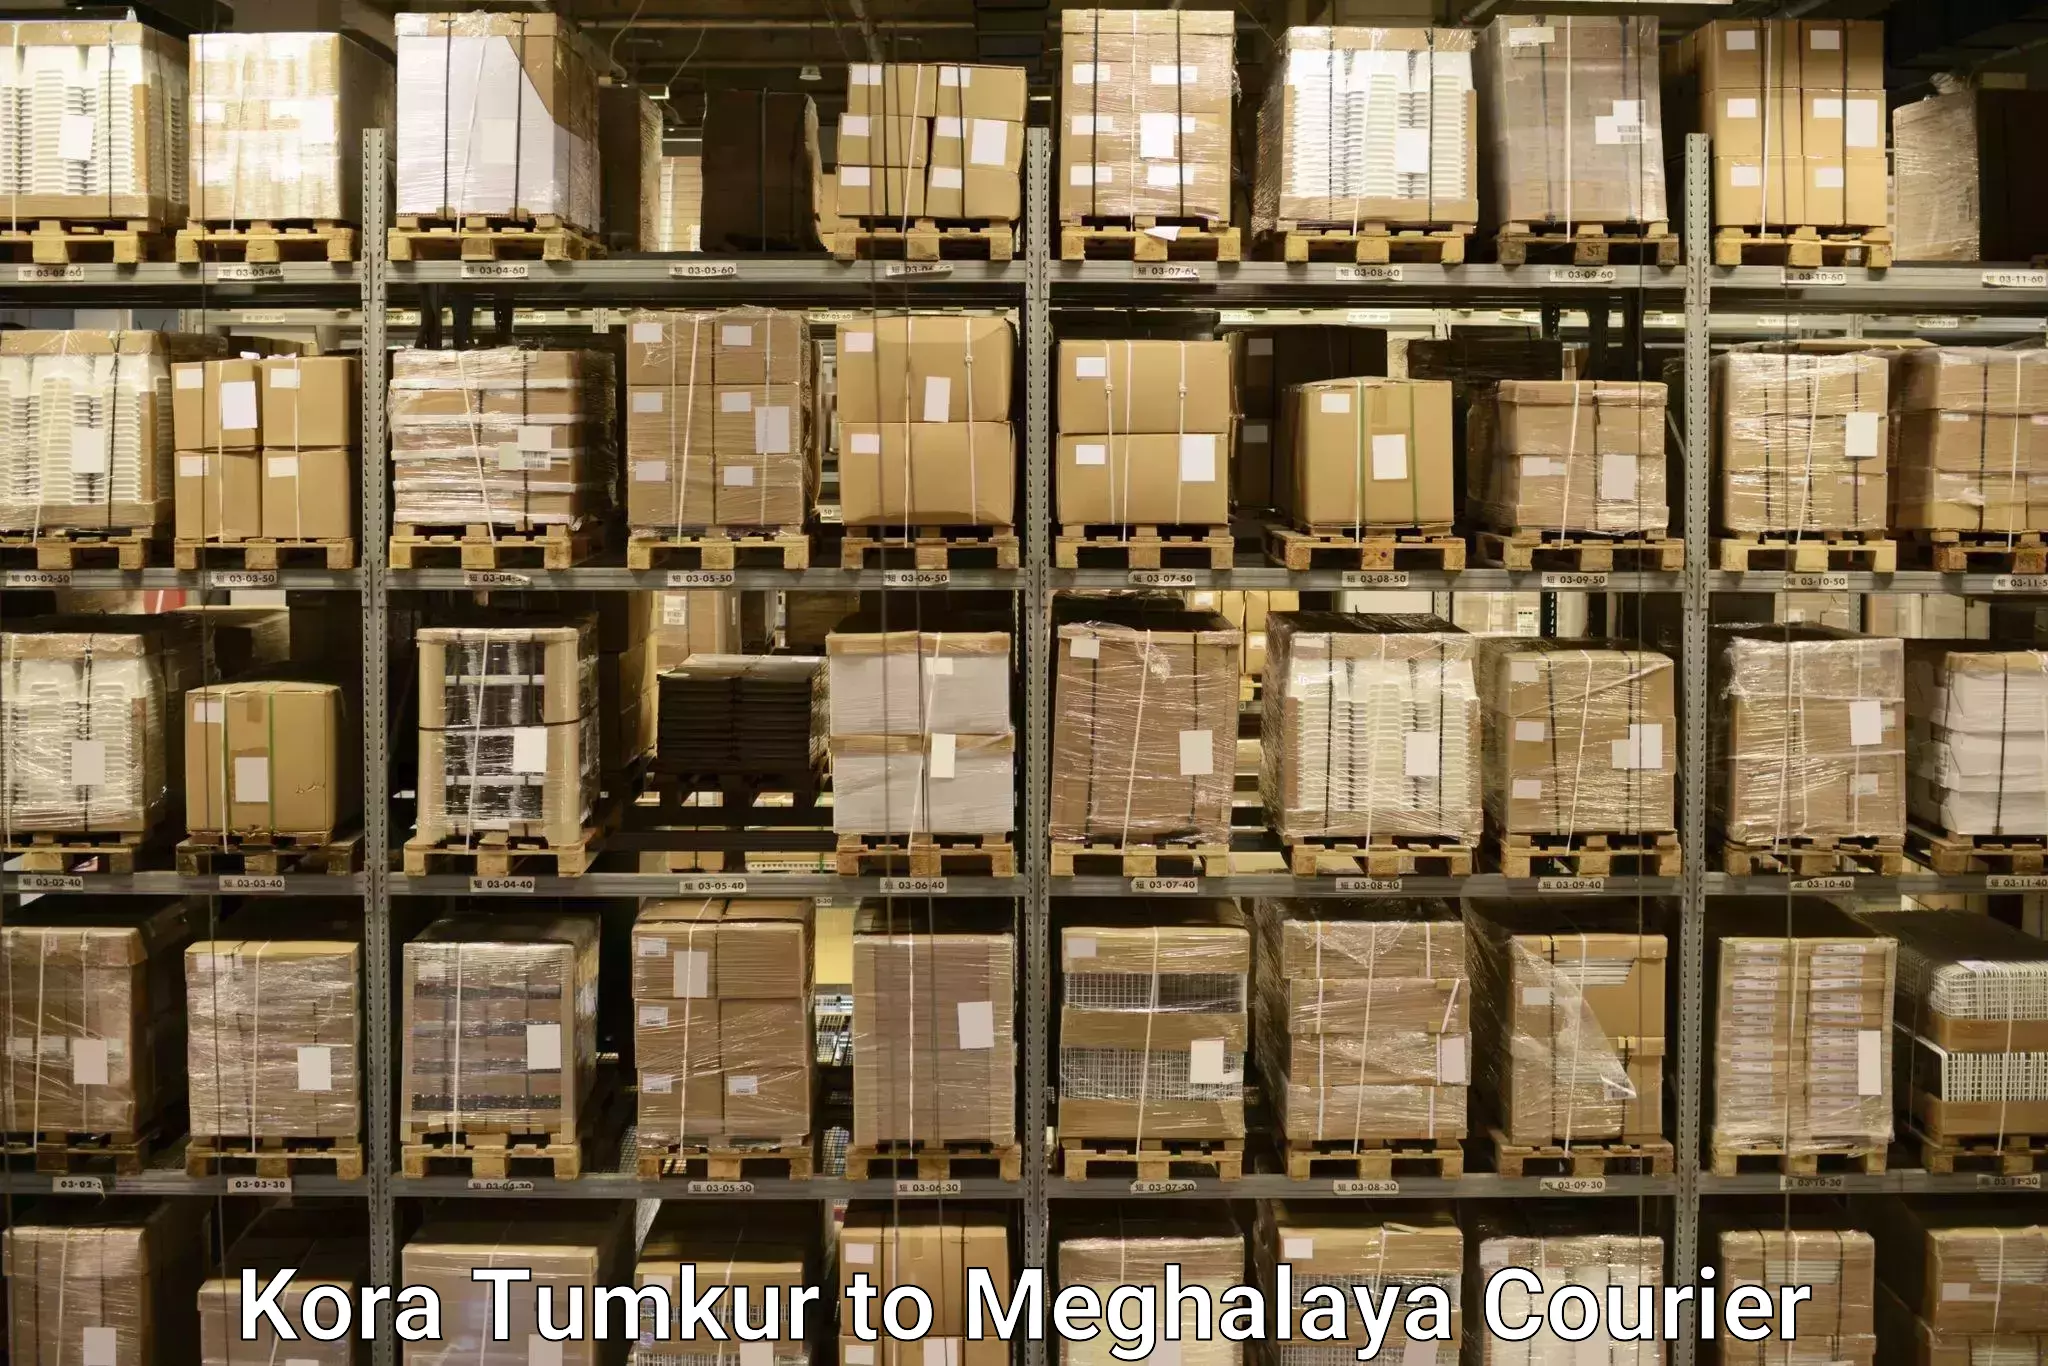 Luggage dispatch service Kora Tumkur to Meghalaya